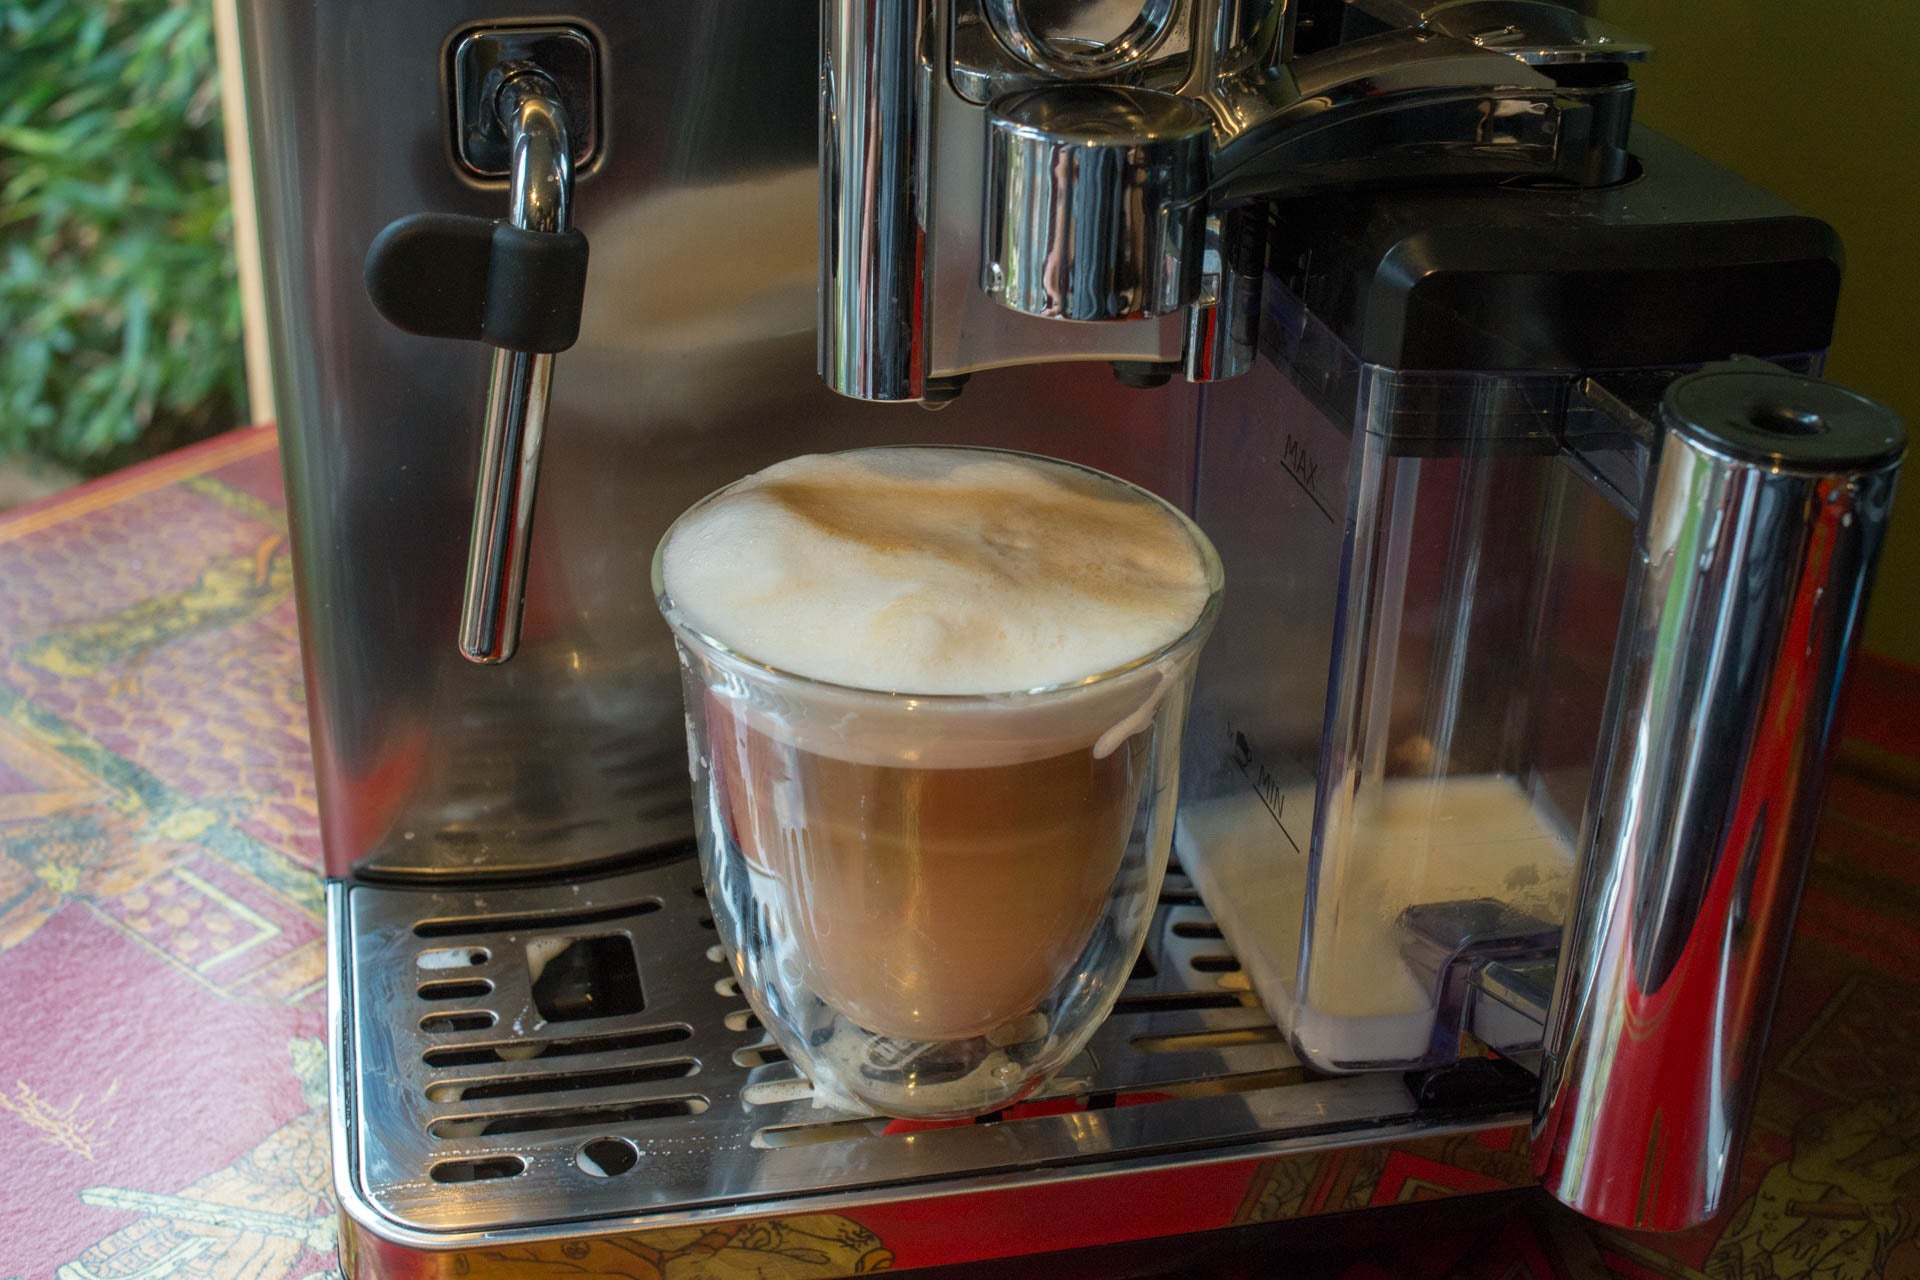 Gaggia Babila espresso machine brewing a cappuccino.